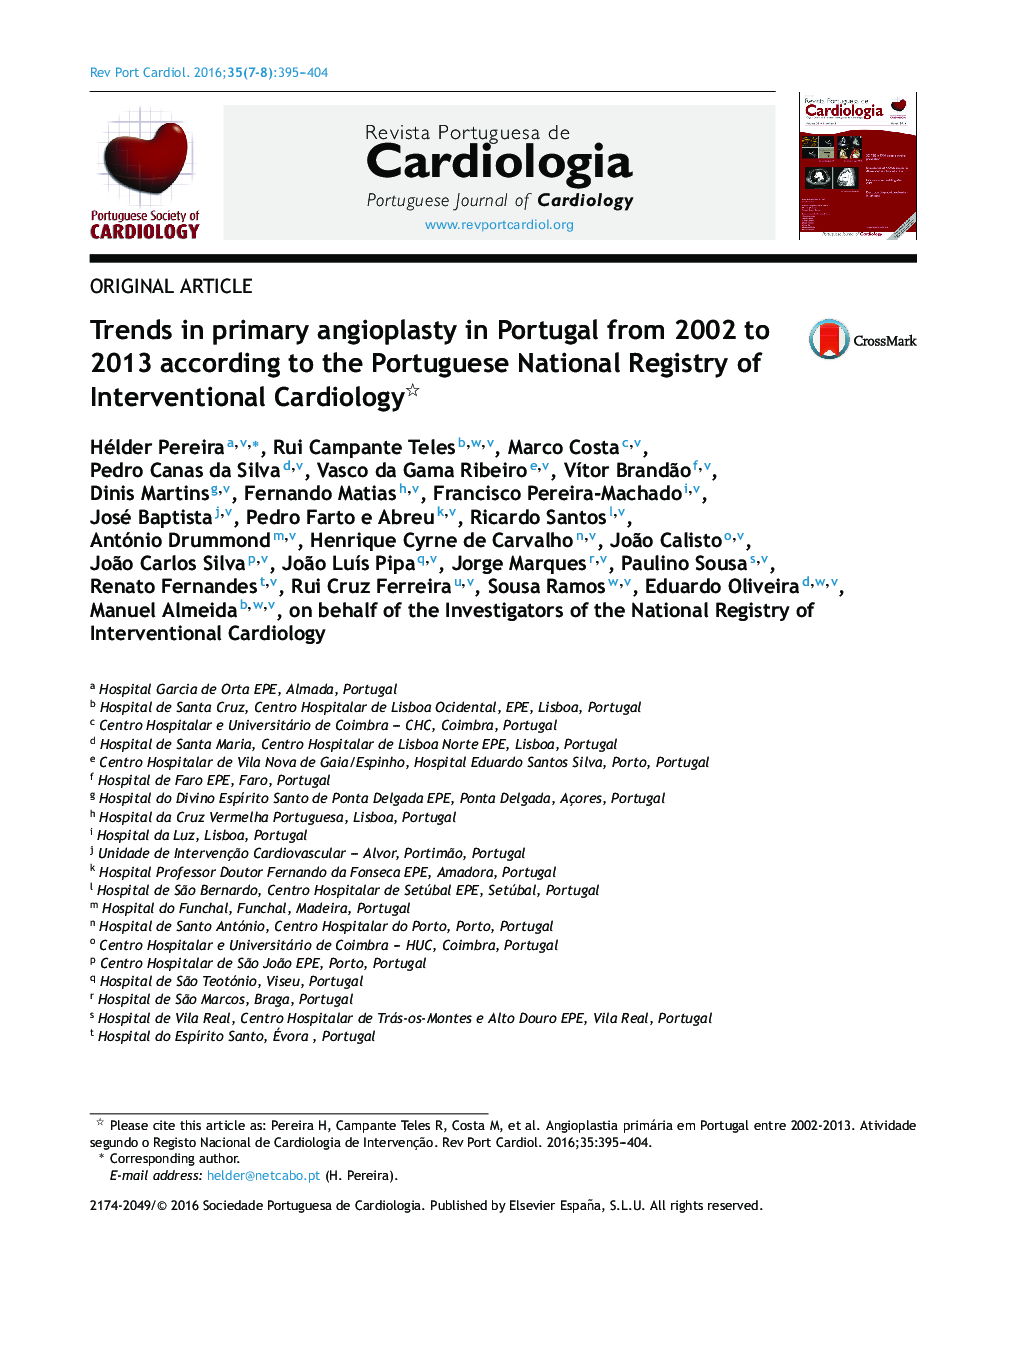 روند انجیوپلاستی اولیه در پرتغال از سال 2002 تا 2013 با توجه به ثبت ملی ثبت نام کارتونی مداخله 